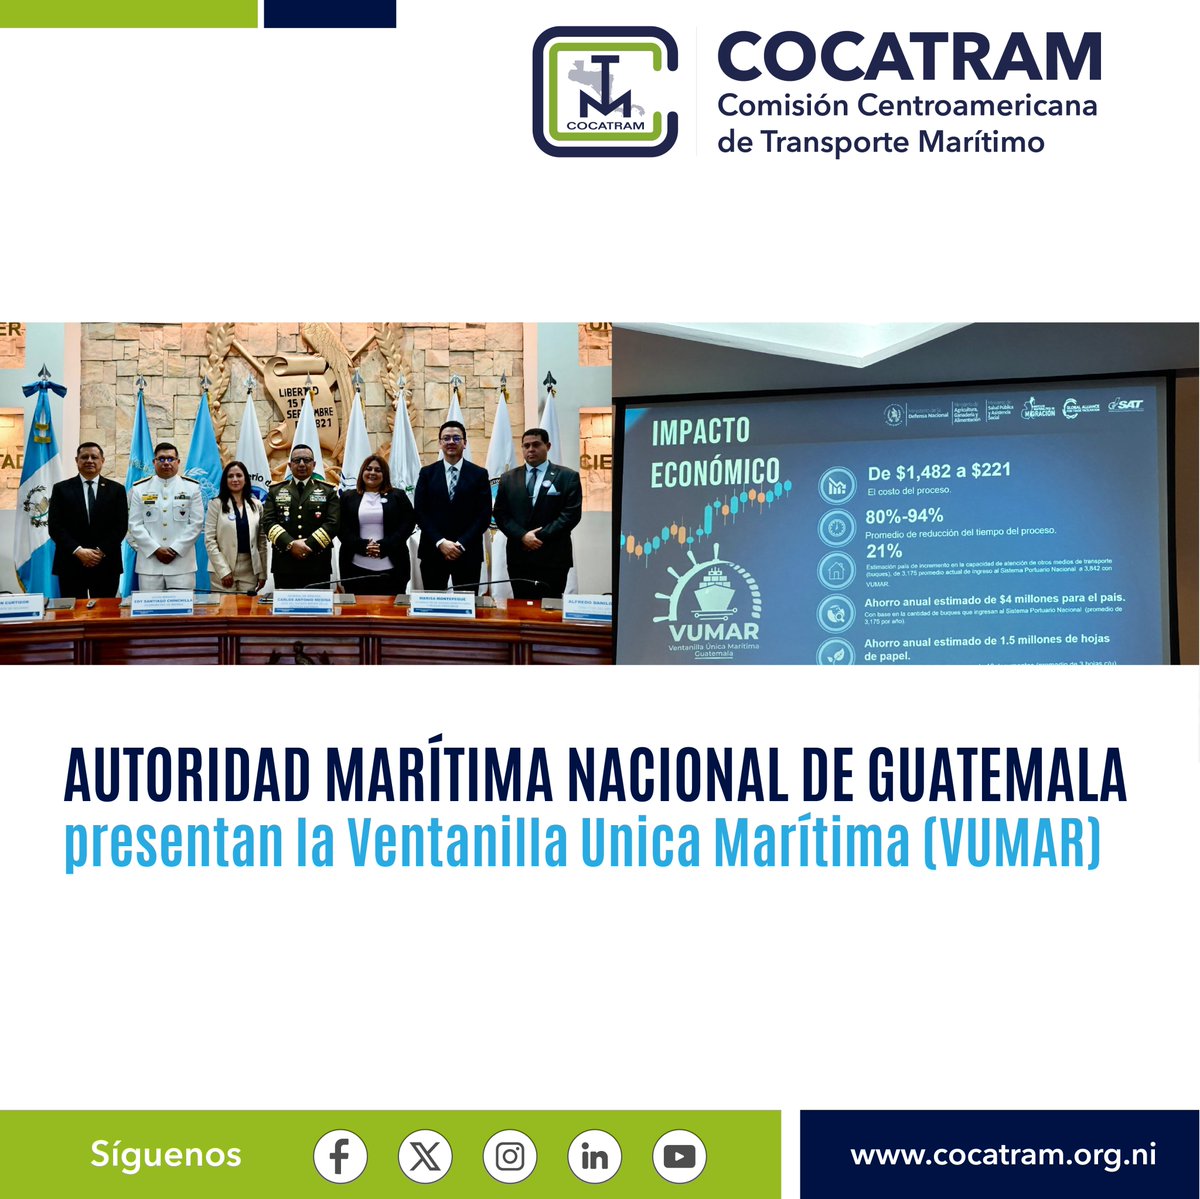 Felicitamos a las autoridades nacionales de Guatemala, responsables de la implementación de la Ventanilla Única Marítima (VUMAR) oficialmente presentada por la Autoridad Marítima Nacional en el Centro de Conferencias del Ministerio de la Defensa Nacional @Ejercito_GT